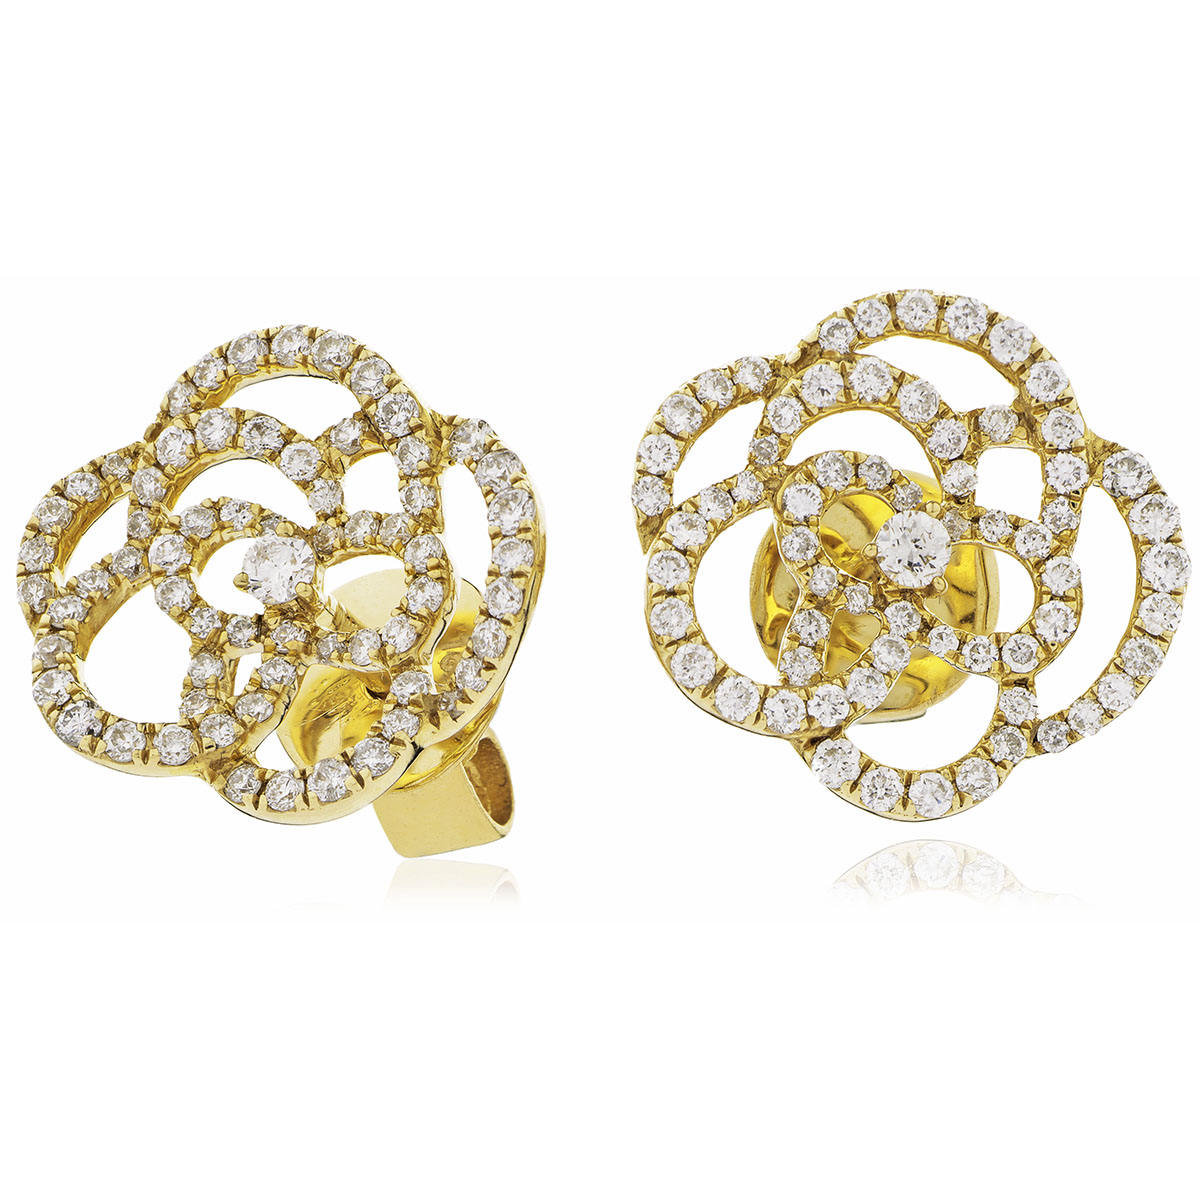 Open Rose Shape Diamond Earrings Studs